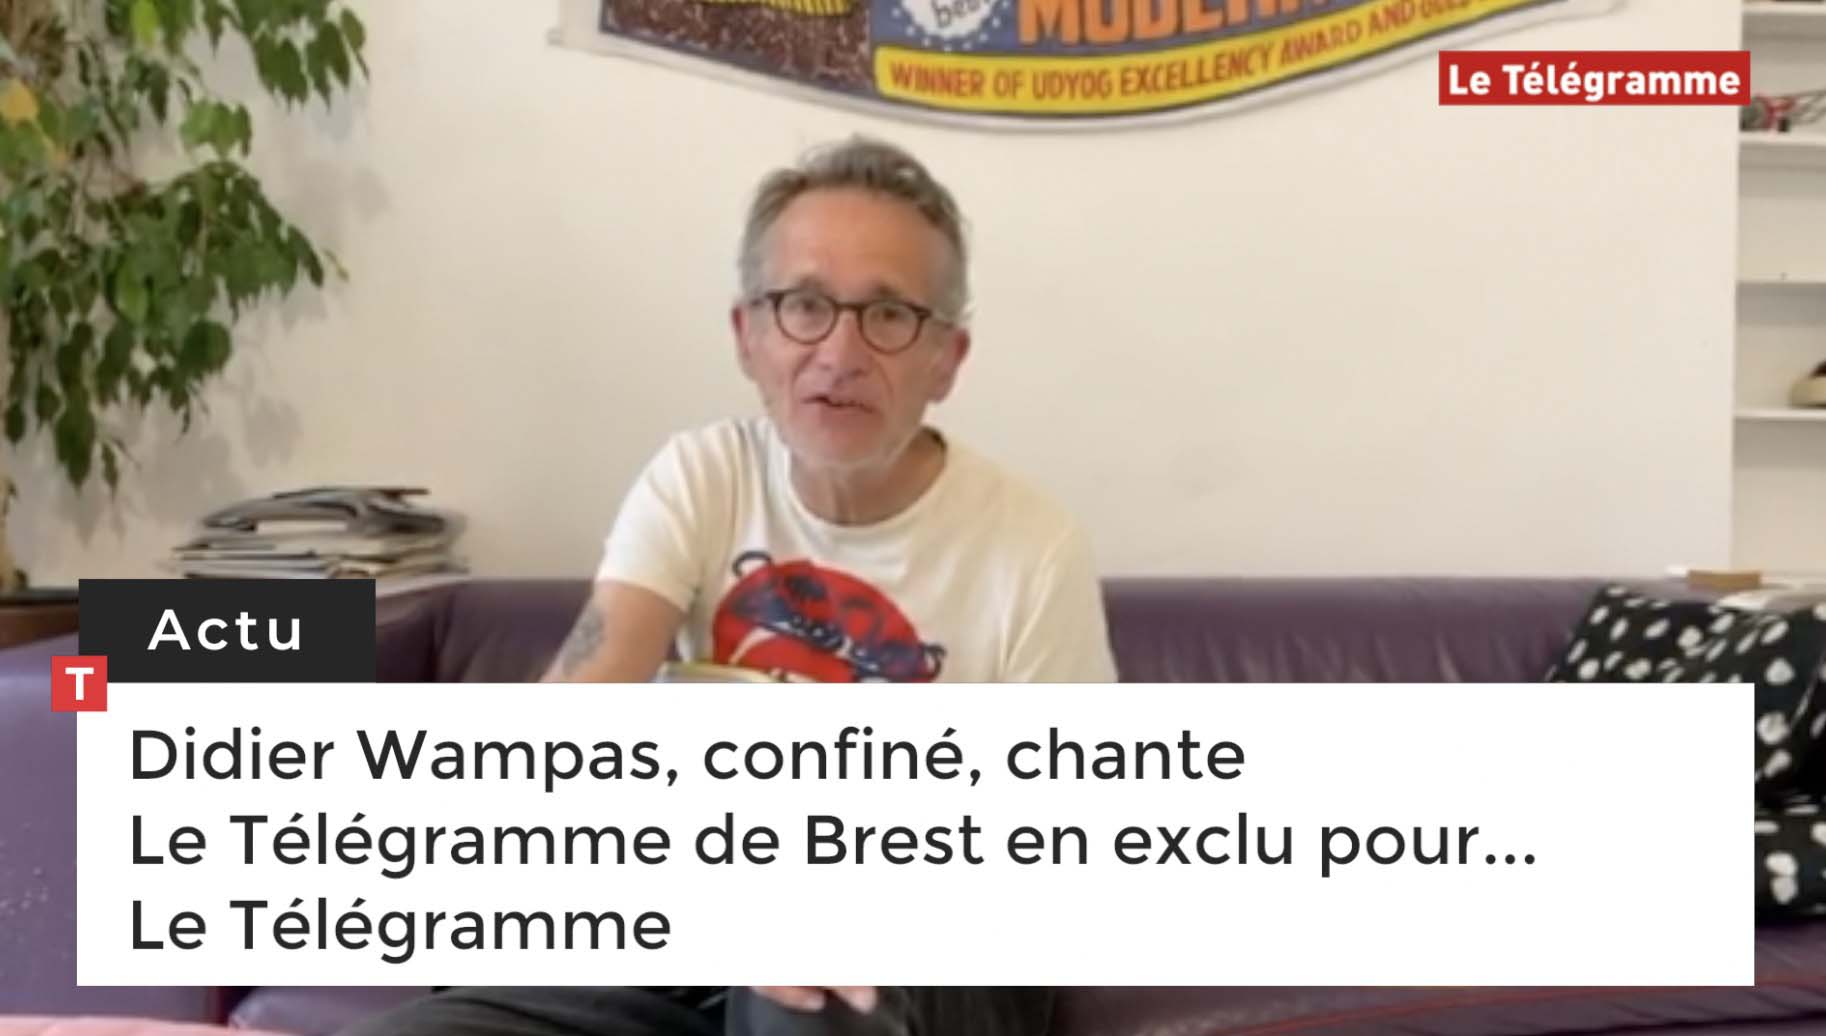 Didier Wampas, confiné, chante "Le Télégramme de Brest" en exclu pour... Le Télégramme (Le Télégramme)